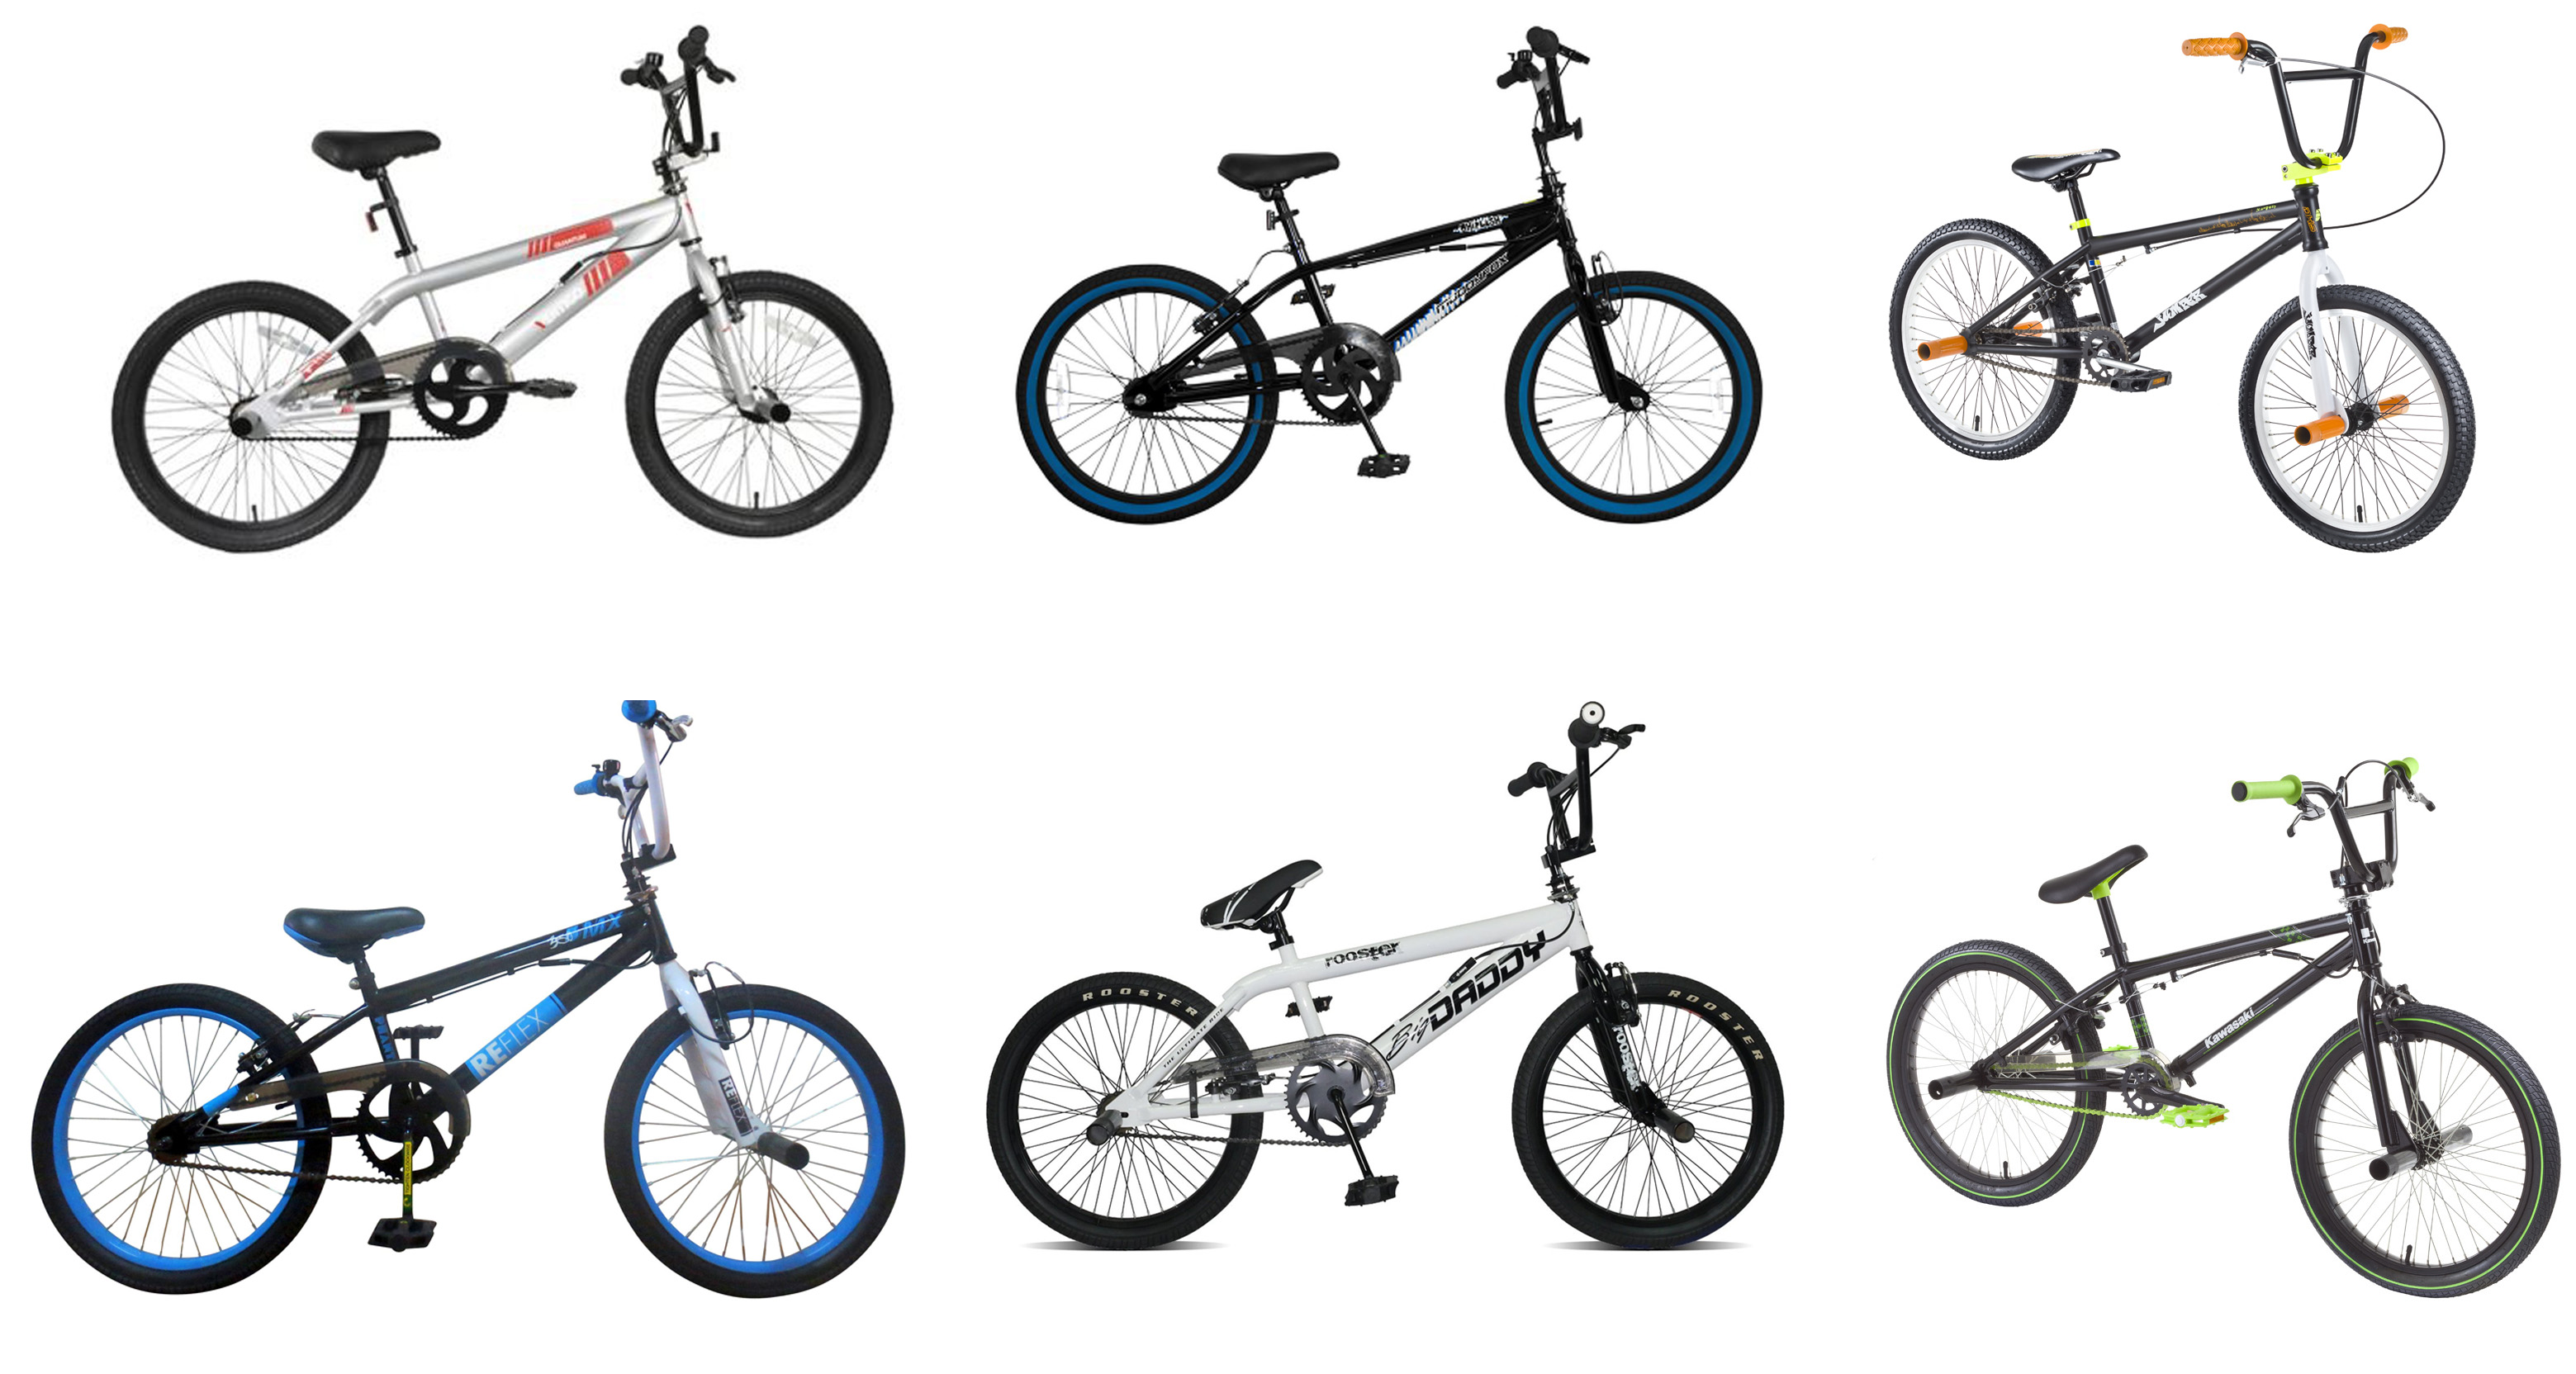 bmx bikes size 20